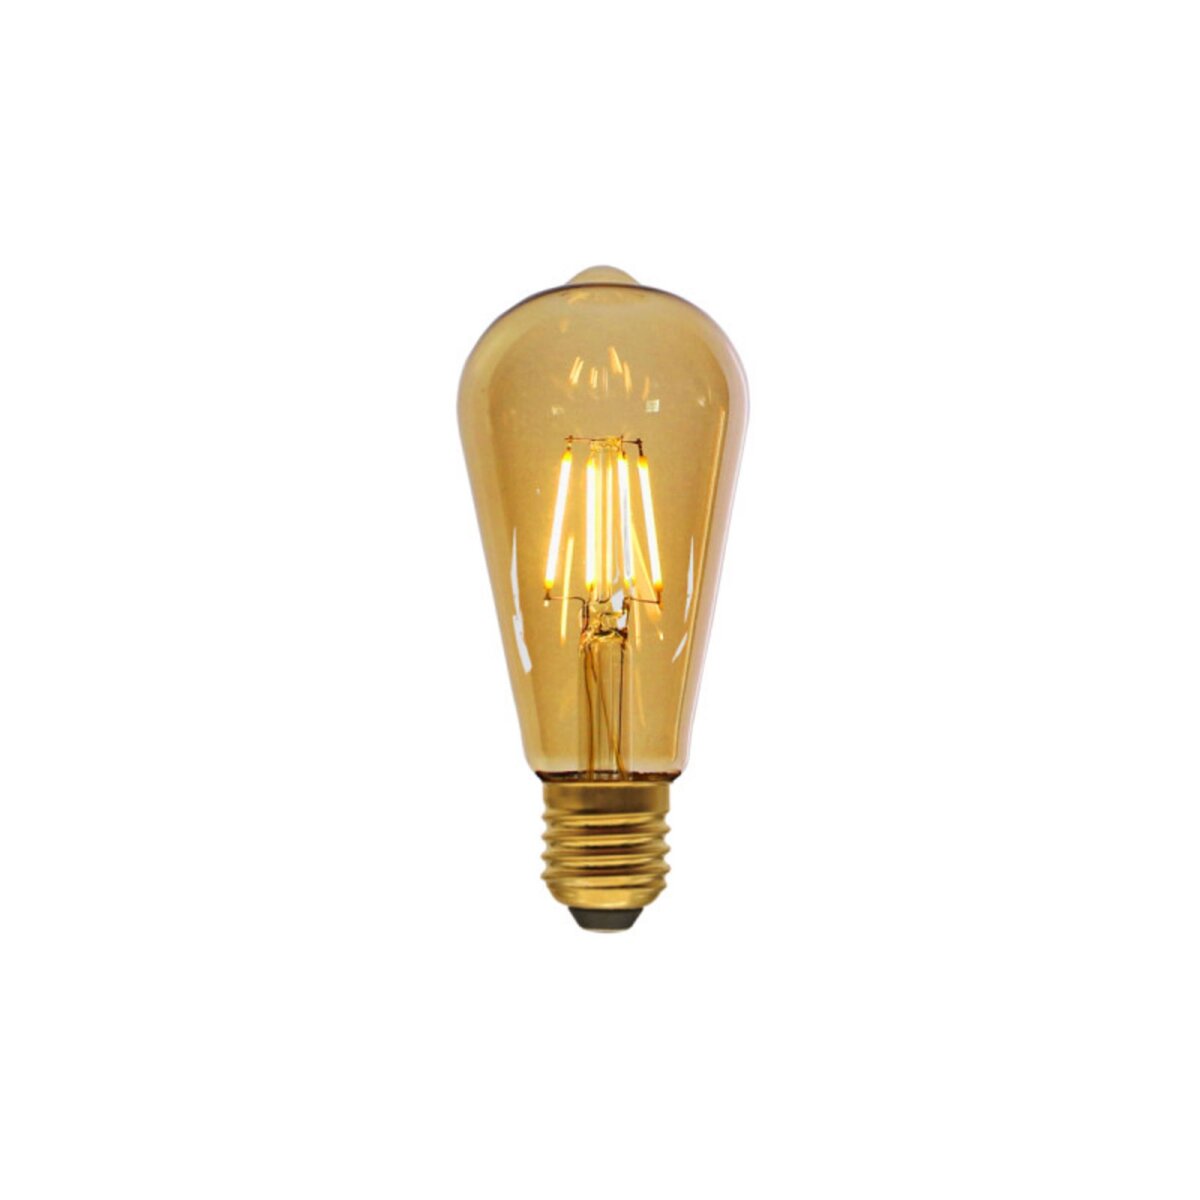  Ampoule LED poire marron XXCELL - 4 W - 200 lumens - 3000 K - E27